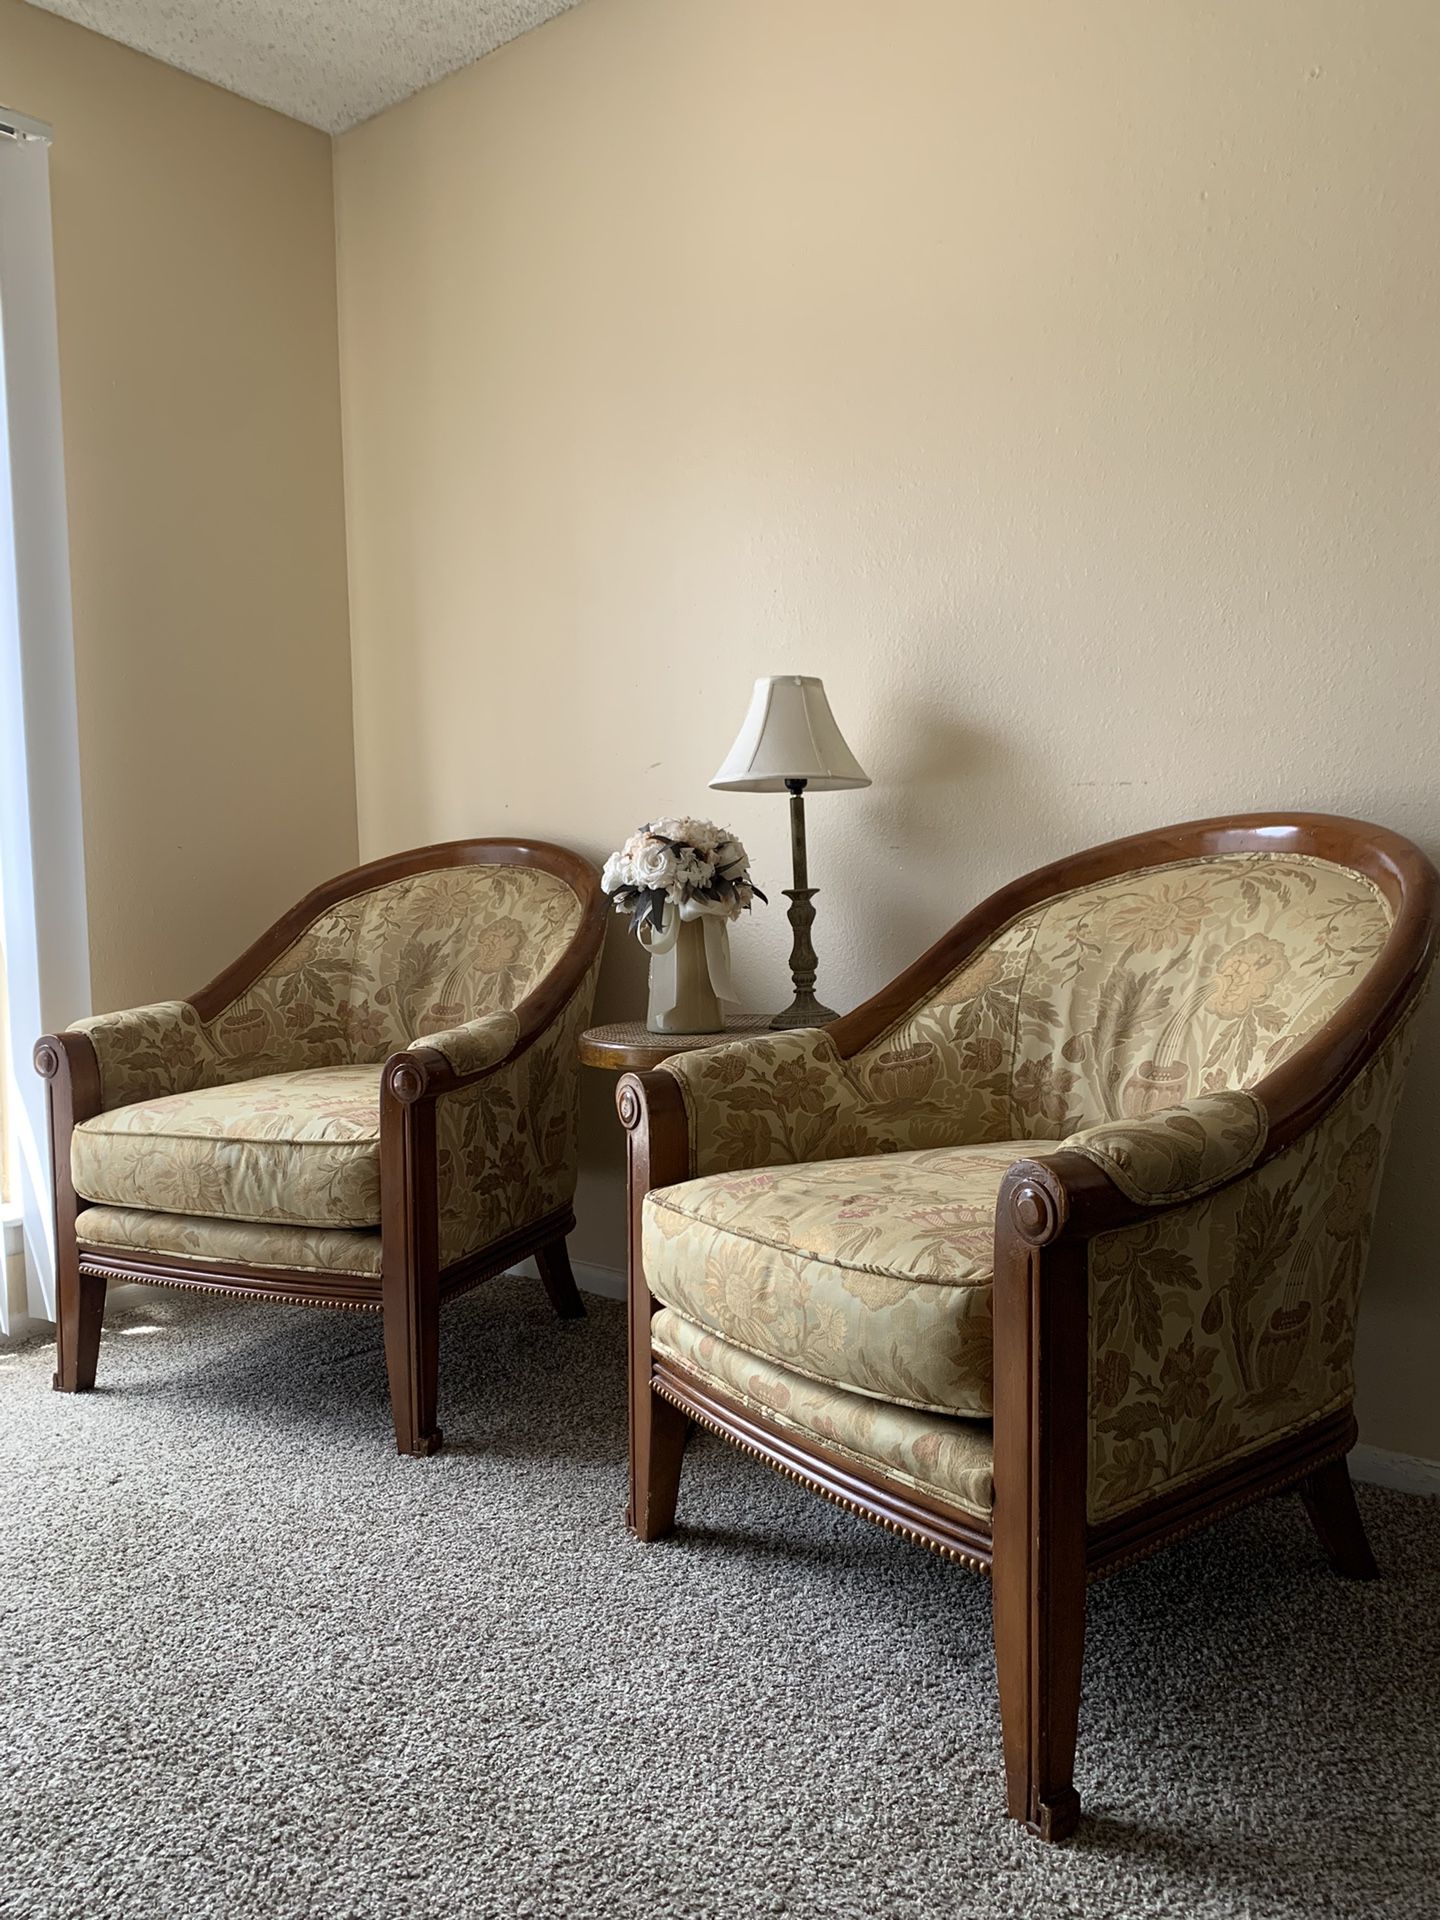 Vintage pair of armchairs